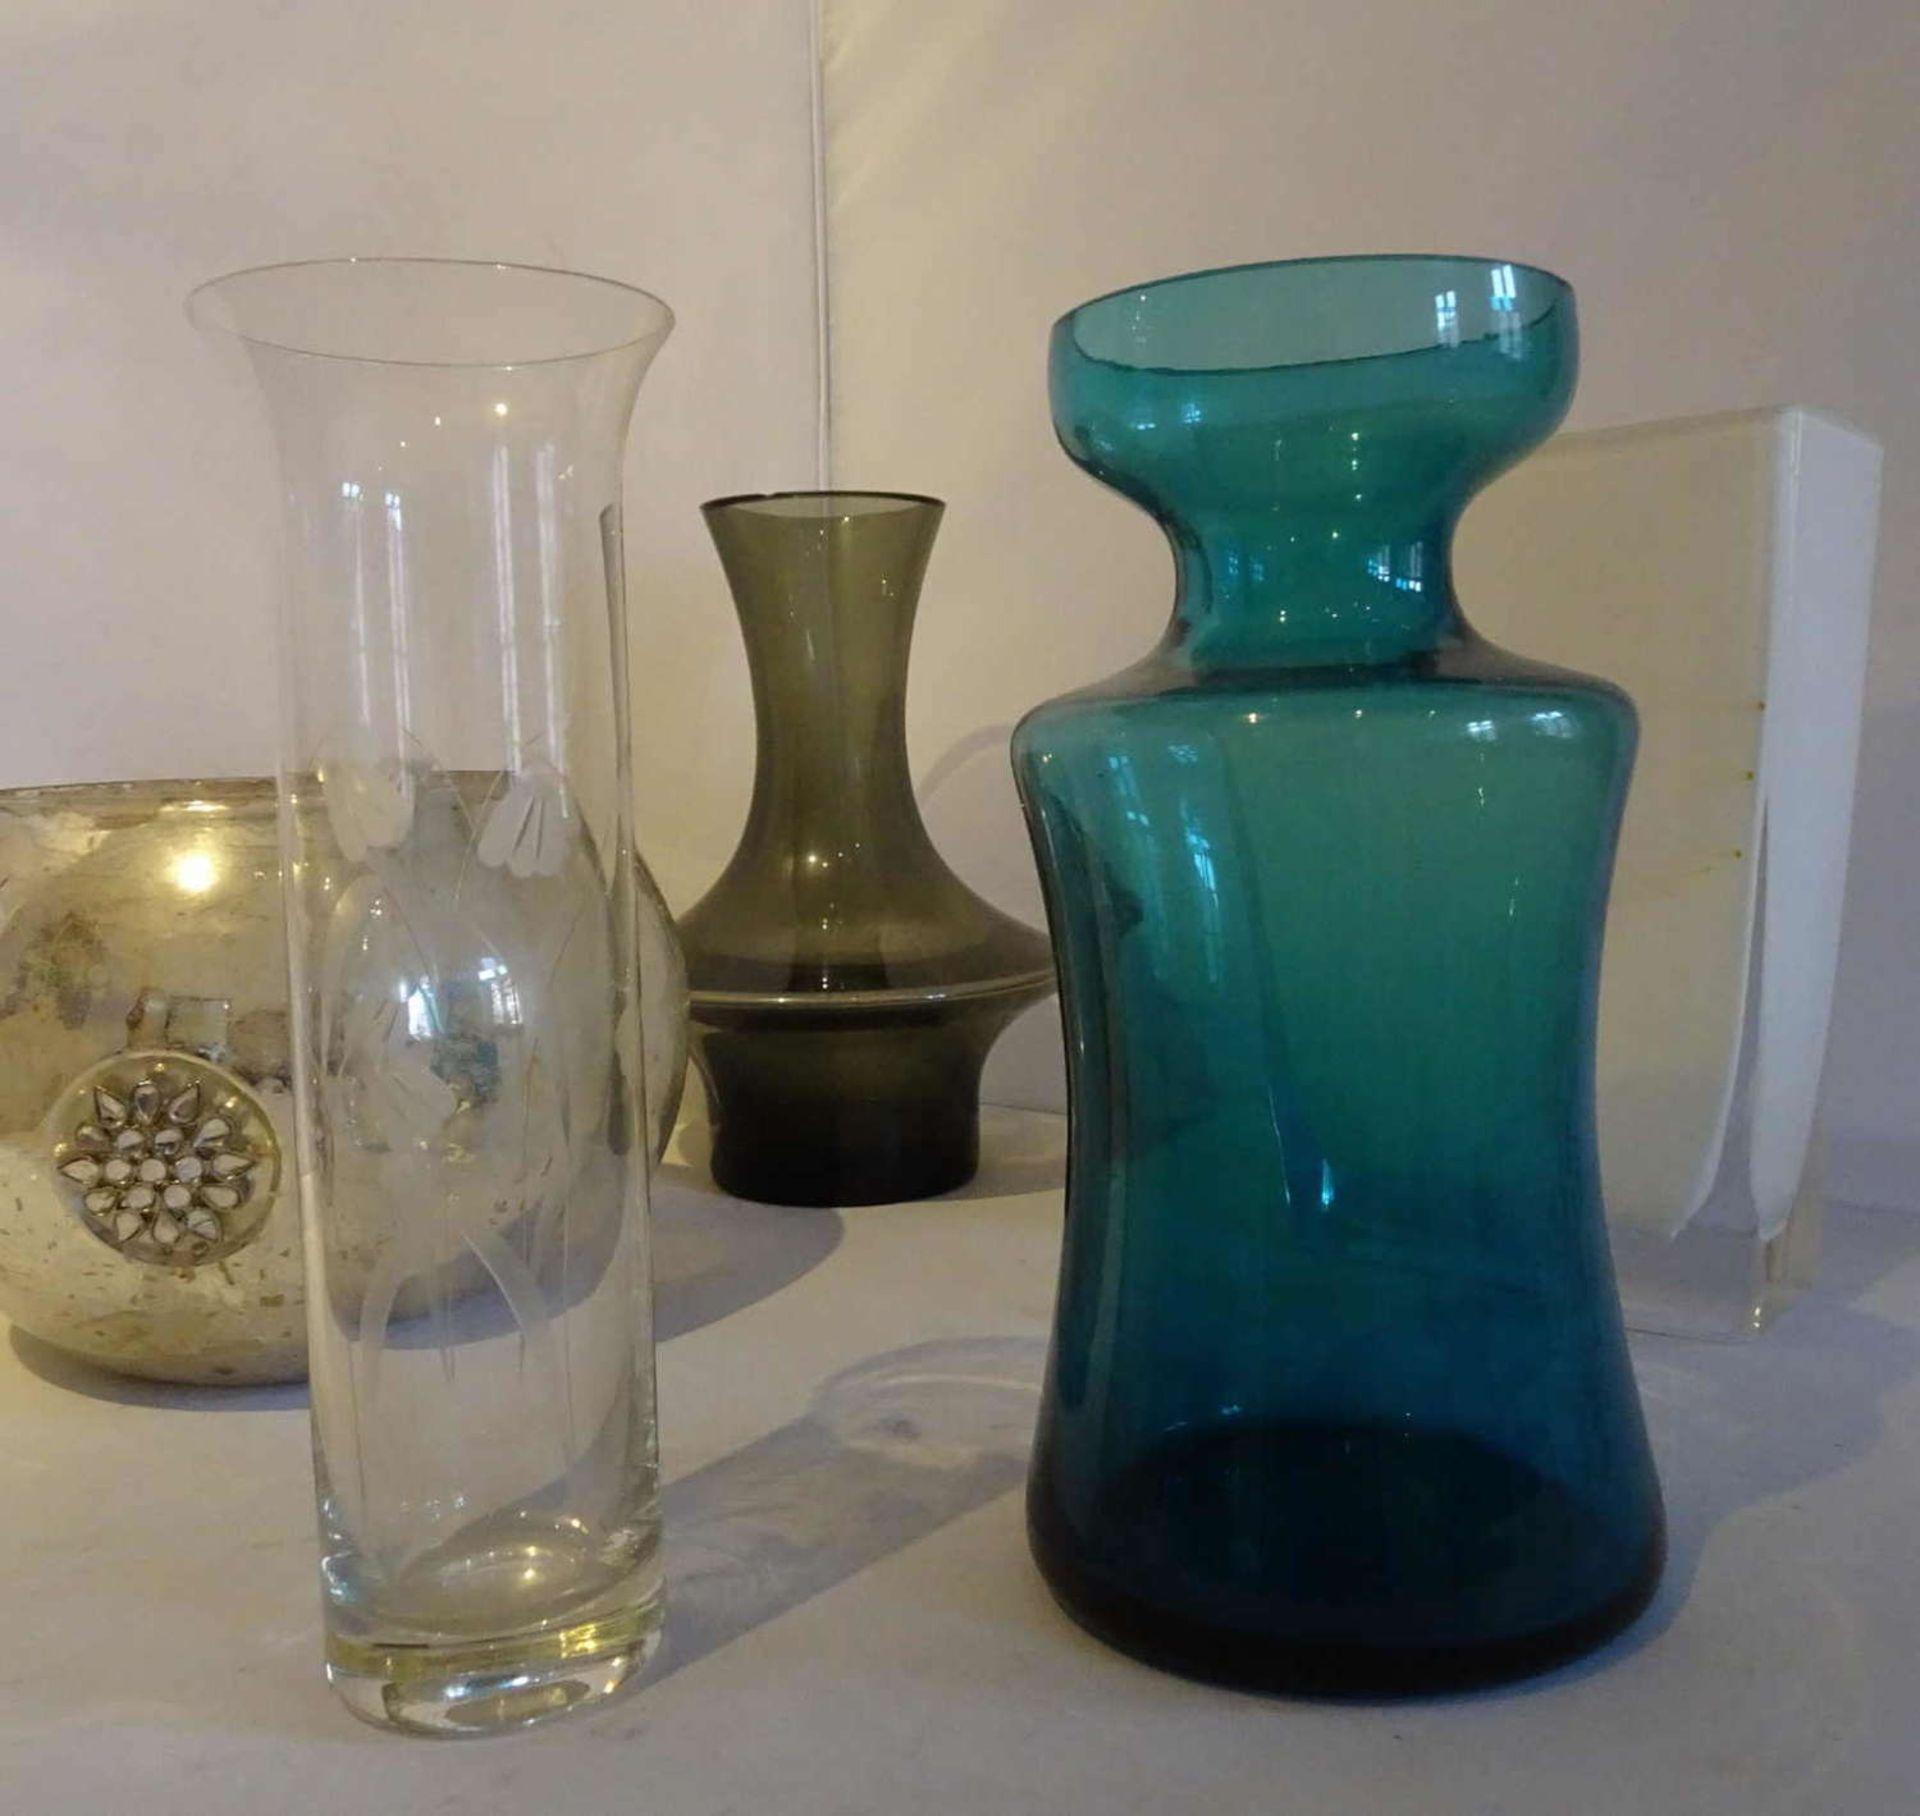 Lot Glas, bestehend aus: Vasen, Schale, Aschenbecher, Paperwright, etc.,guter gebrauchter ZustandLot - Bild 2 aus 2